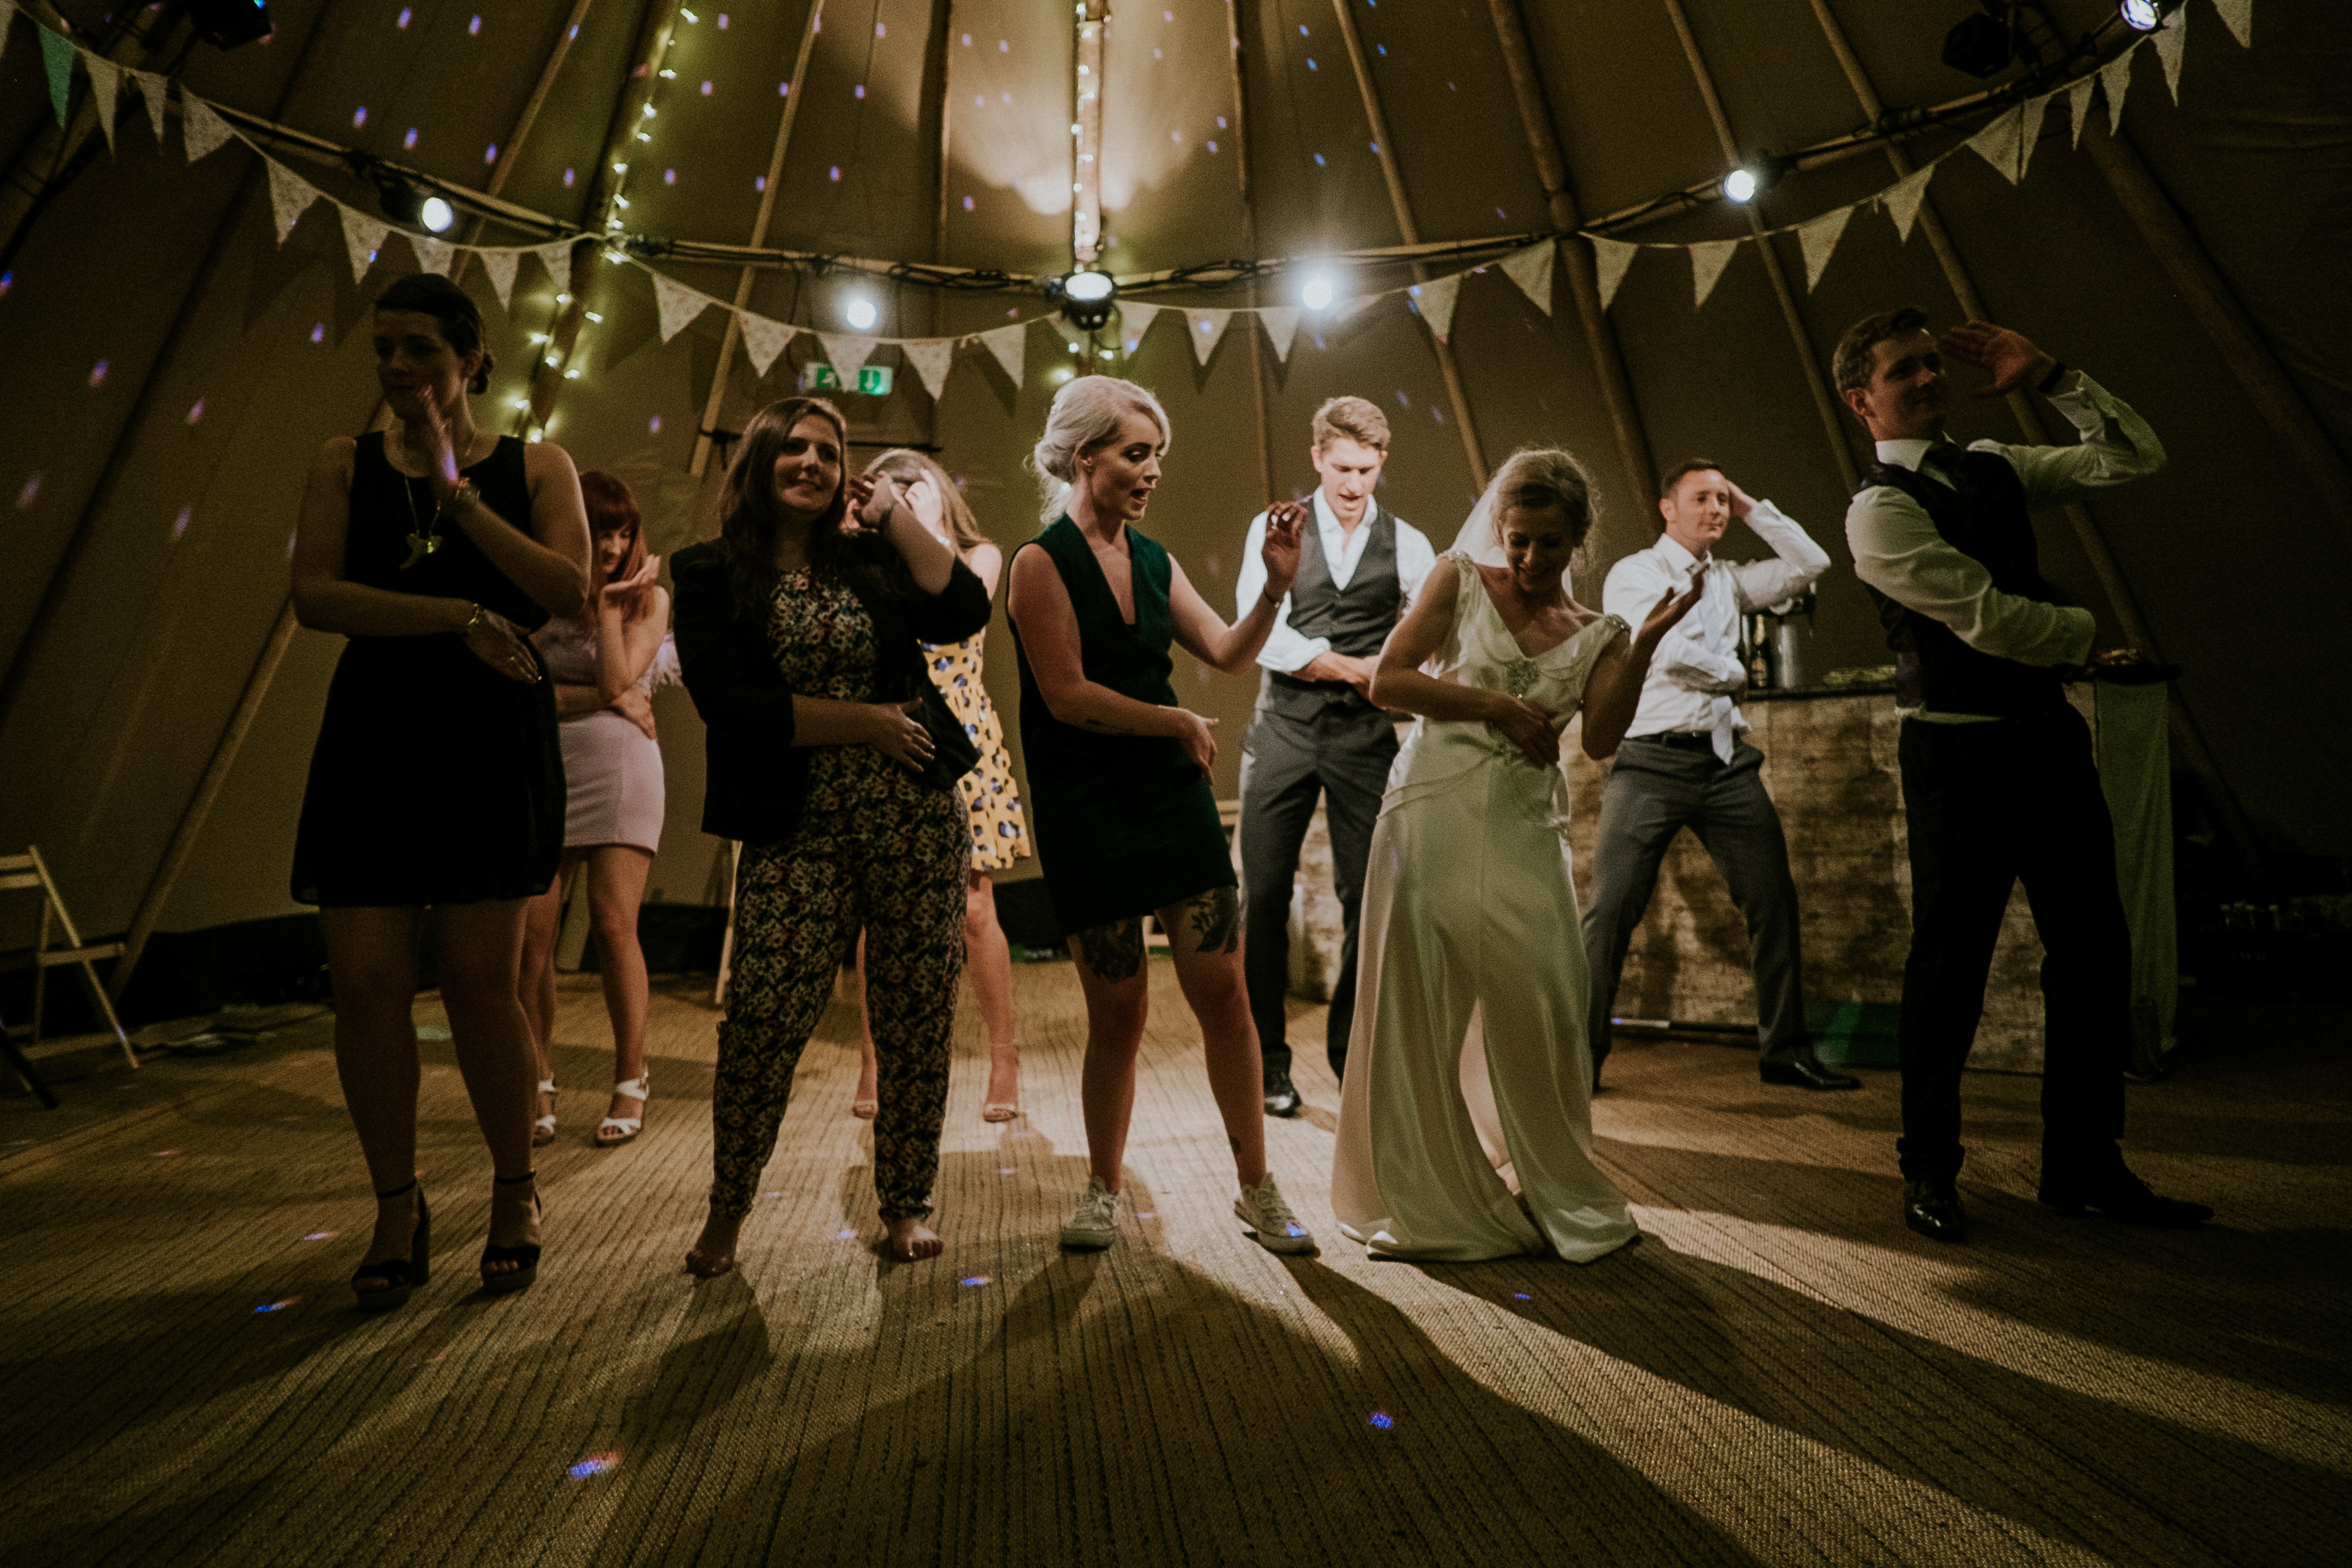 Eine Gruppe von Menschen tanzt in einem Zelt.